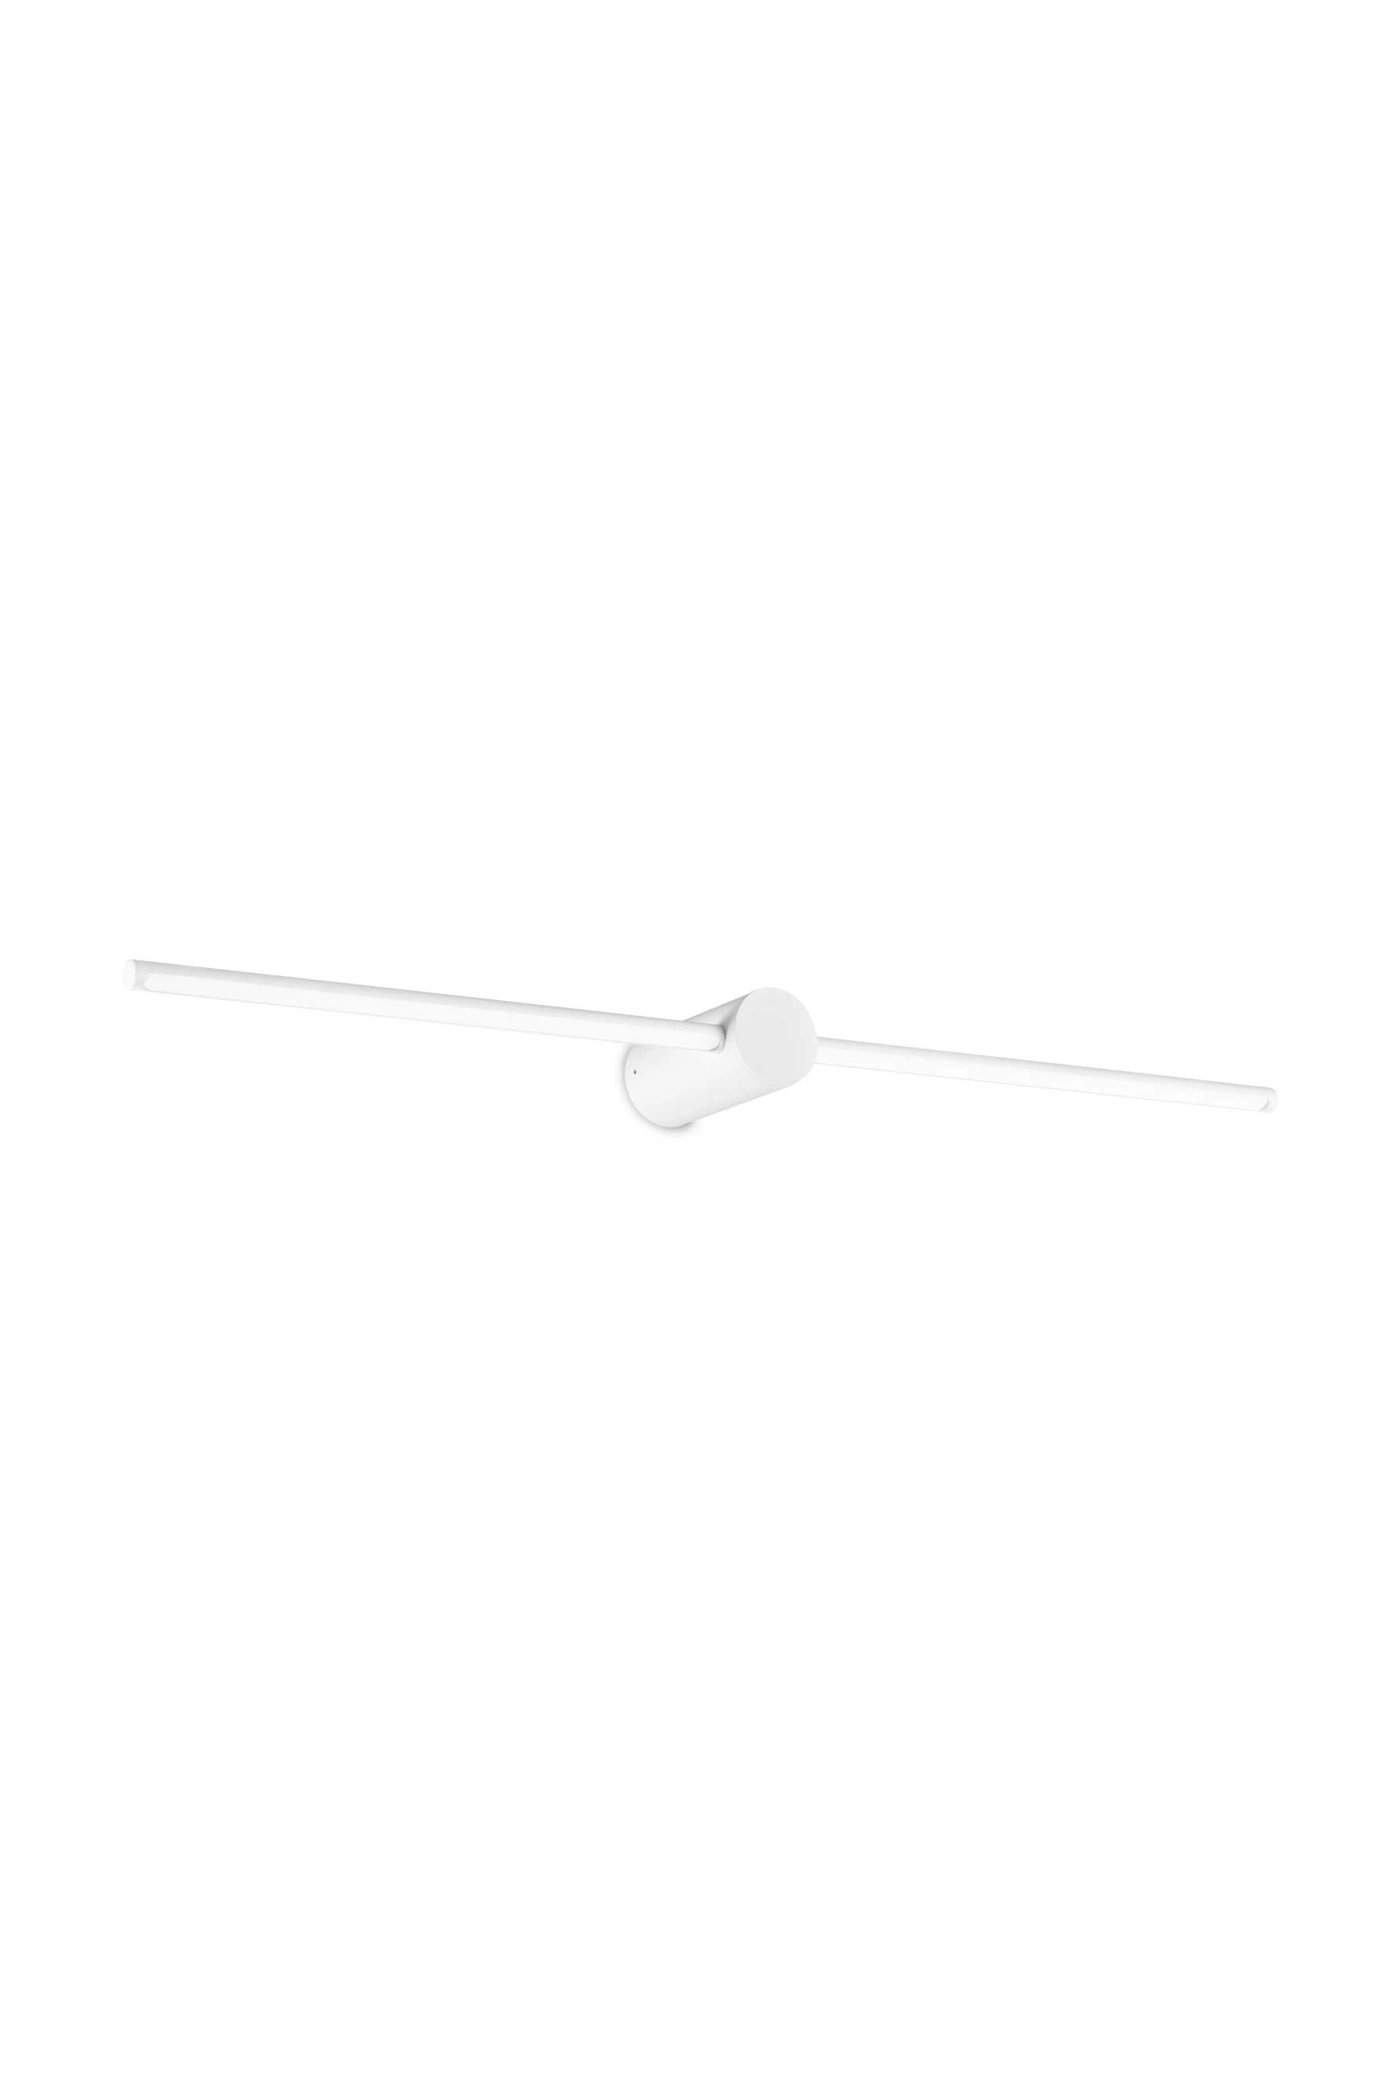   
                        
                        Подсветка для ванной IDEAL LUX (Италия) 10674    
                         в стиле Хай-тек.  
                        Тип источника света: встроенный led-модуль, несъемный.                                                 Цвета плафонов и подвесок: Белый.                         Материал: Пластик.                          фото 1